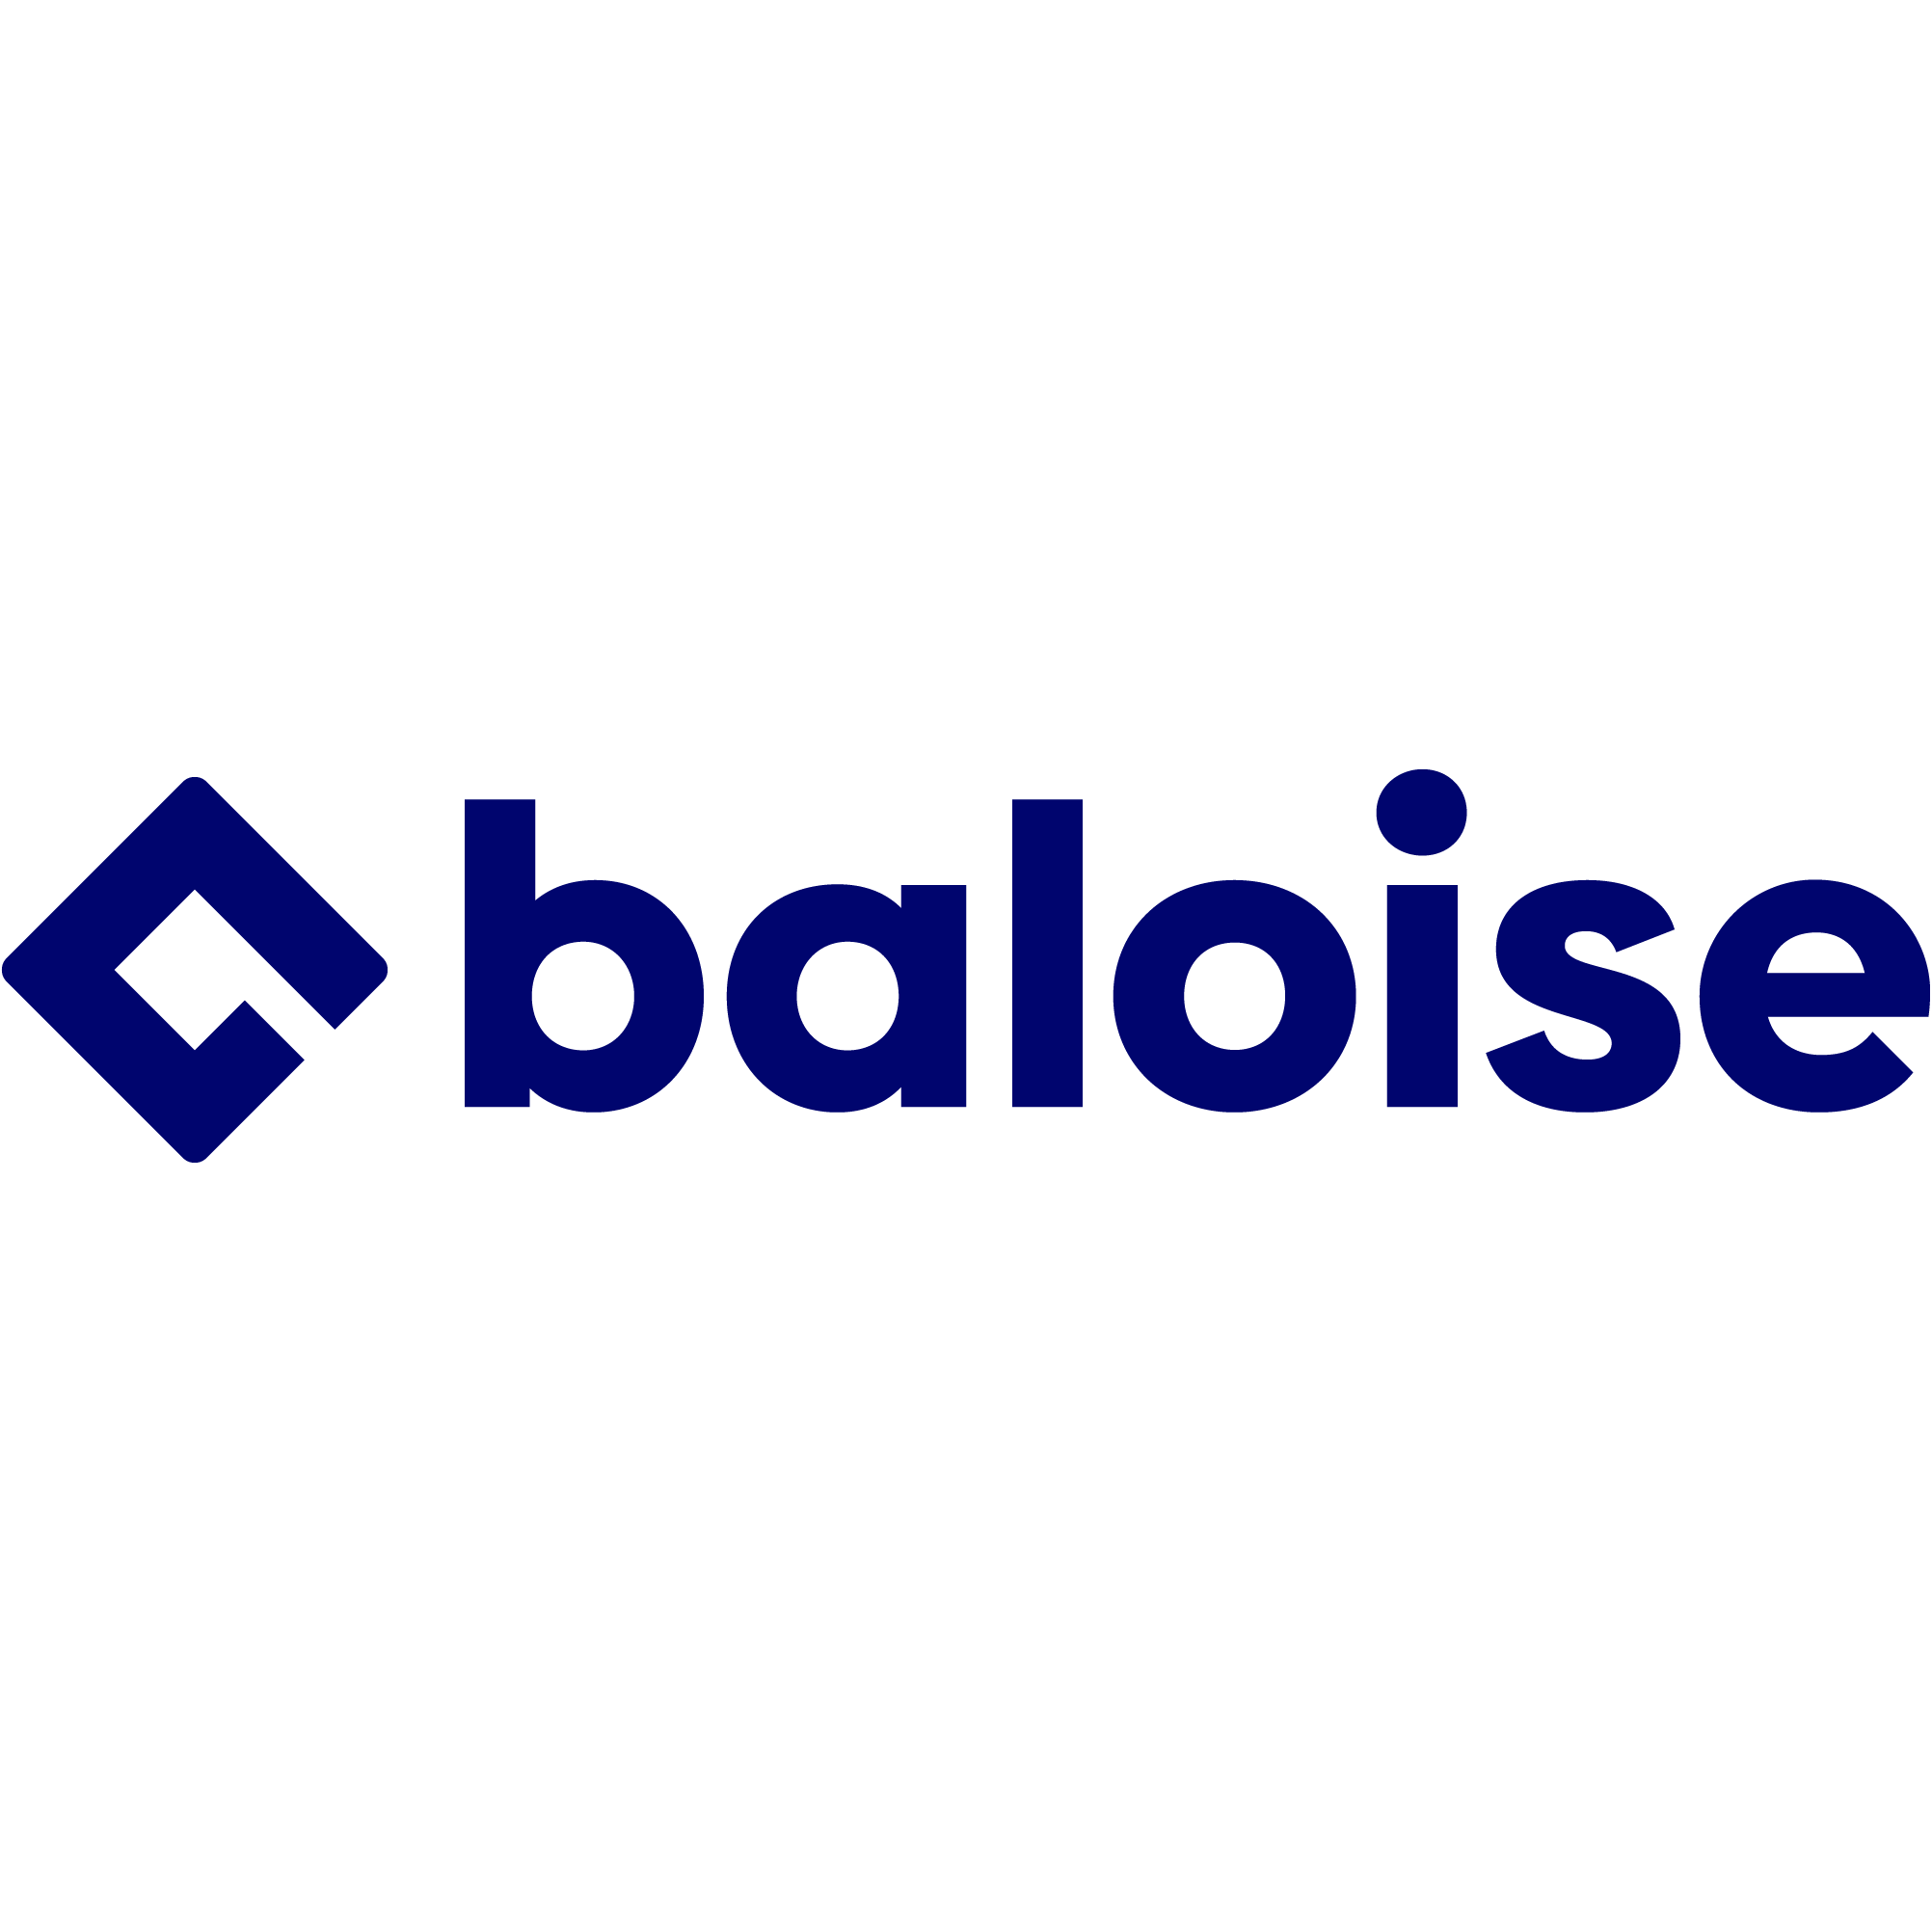 Baloise - Generalagentur Anja Thiel - De Feudis in Much in Much - Logo